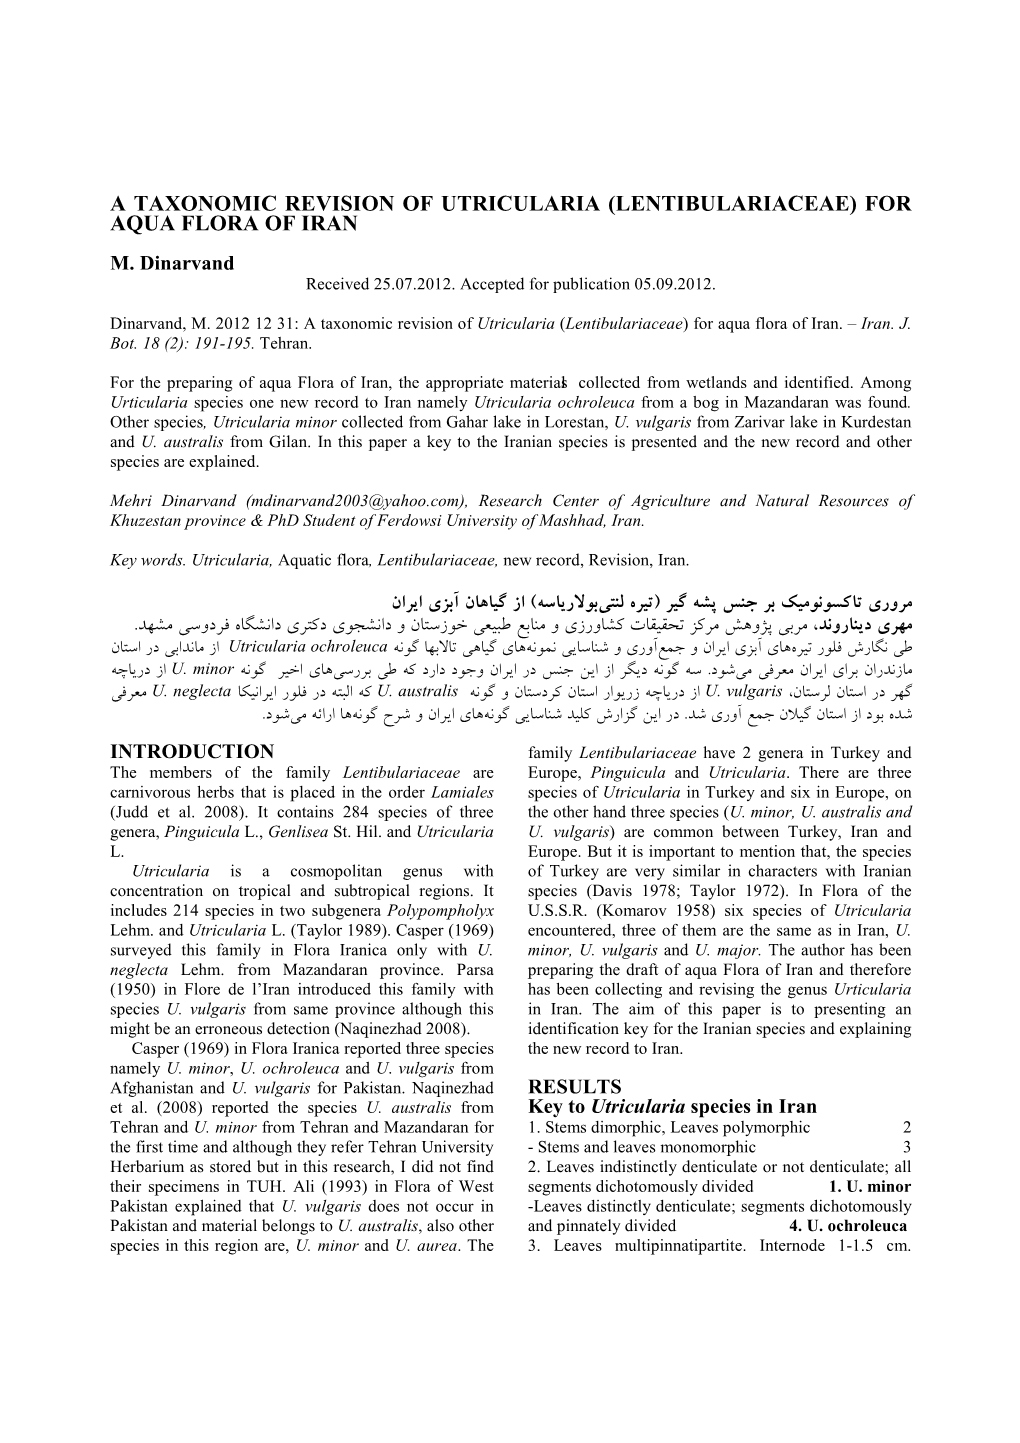 A Taxonomic Revision of Utricularia (Lentibulariaceae) for Aqua Flora of Iran M